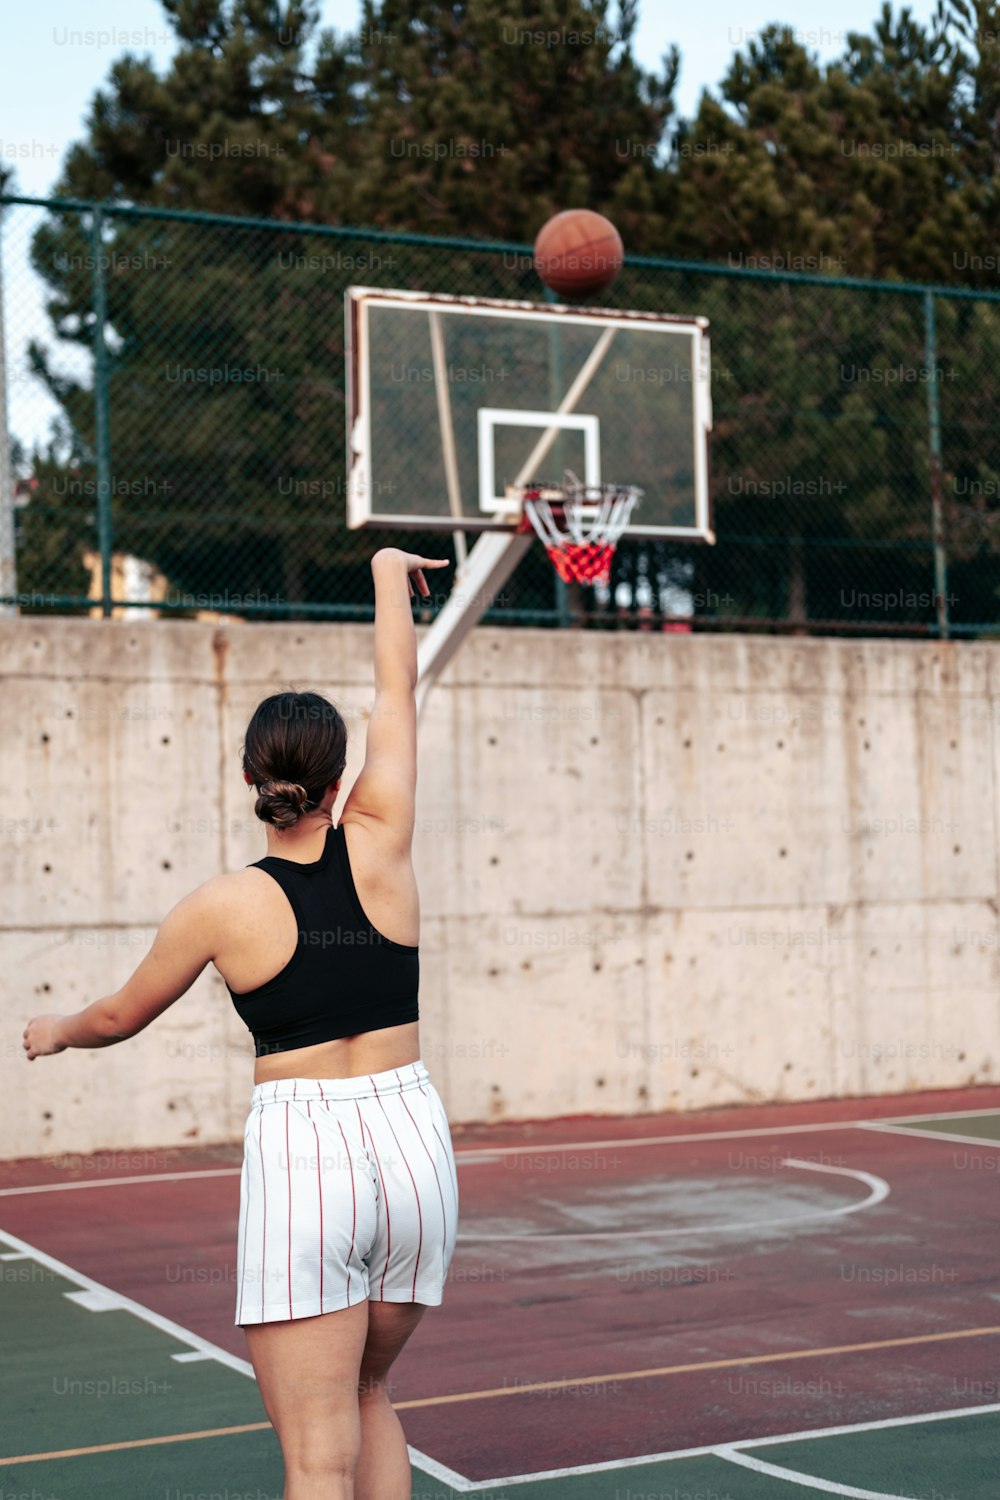 Una mujer está jugando baloncesto en una cancha